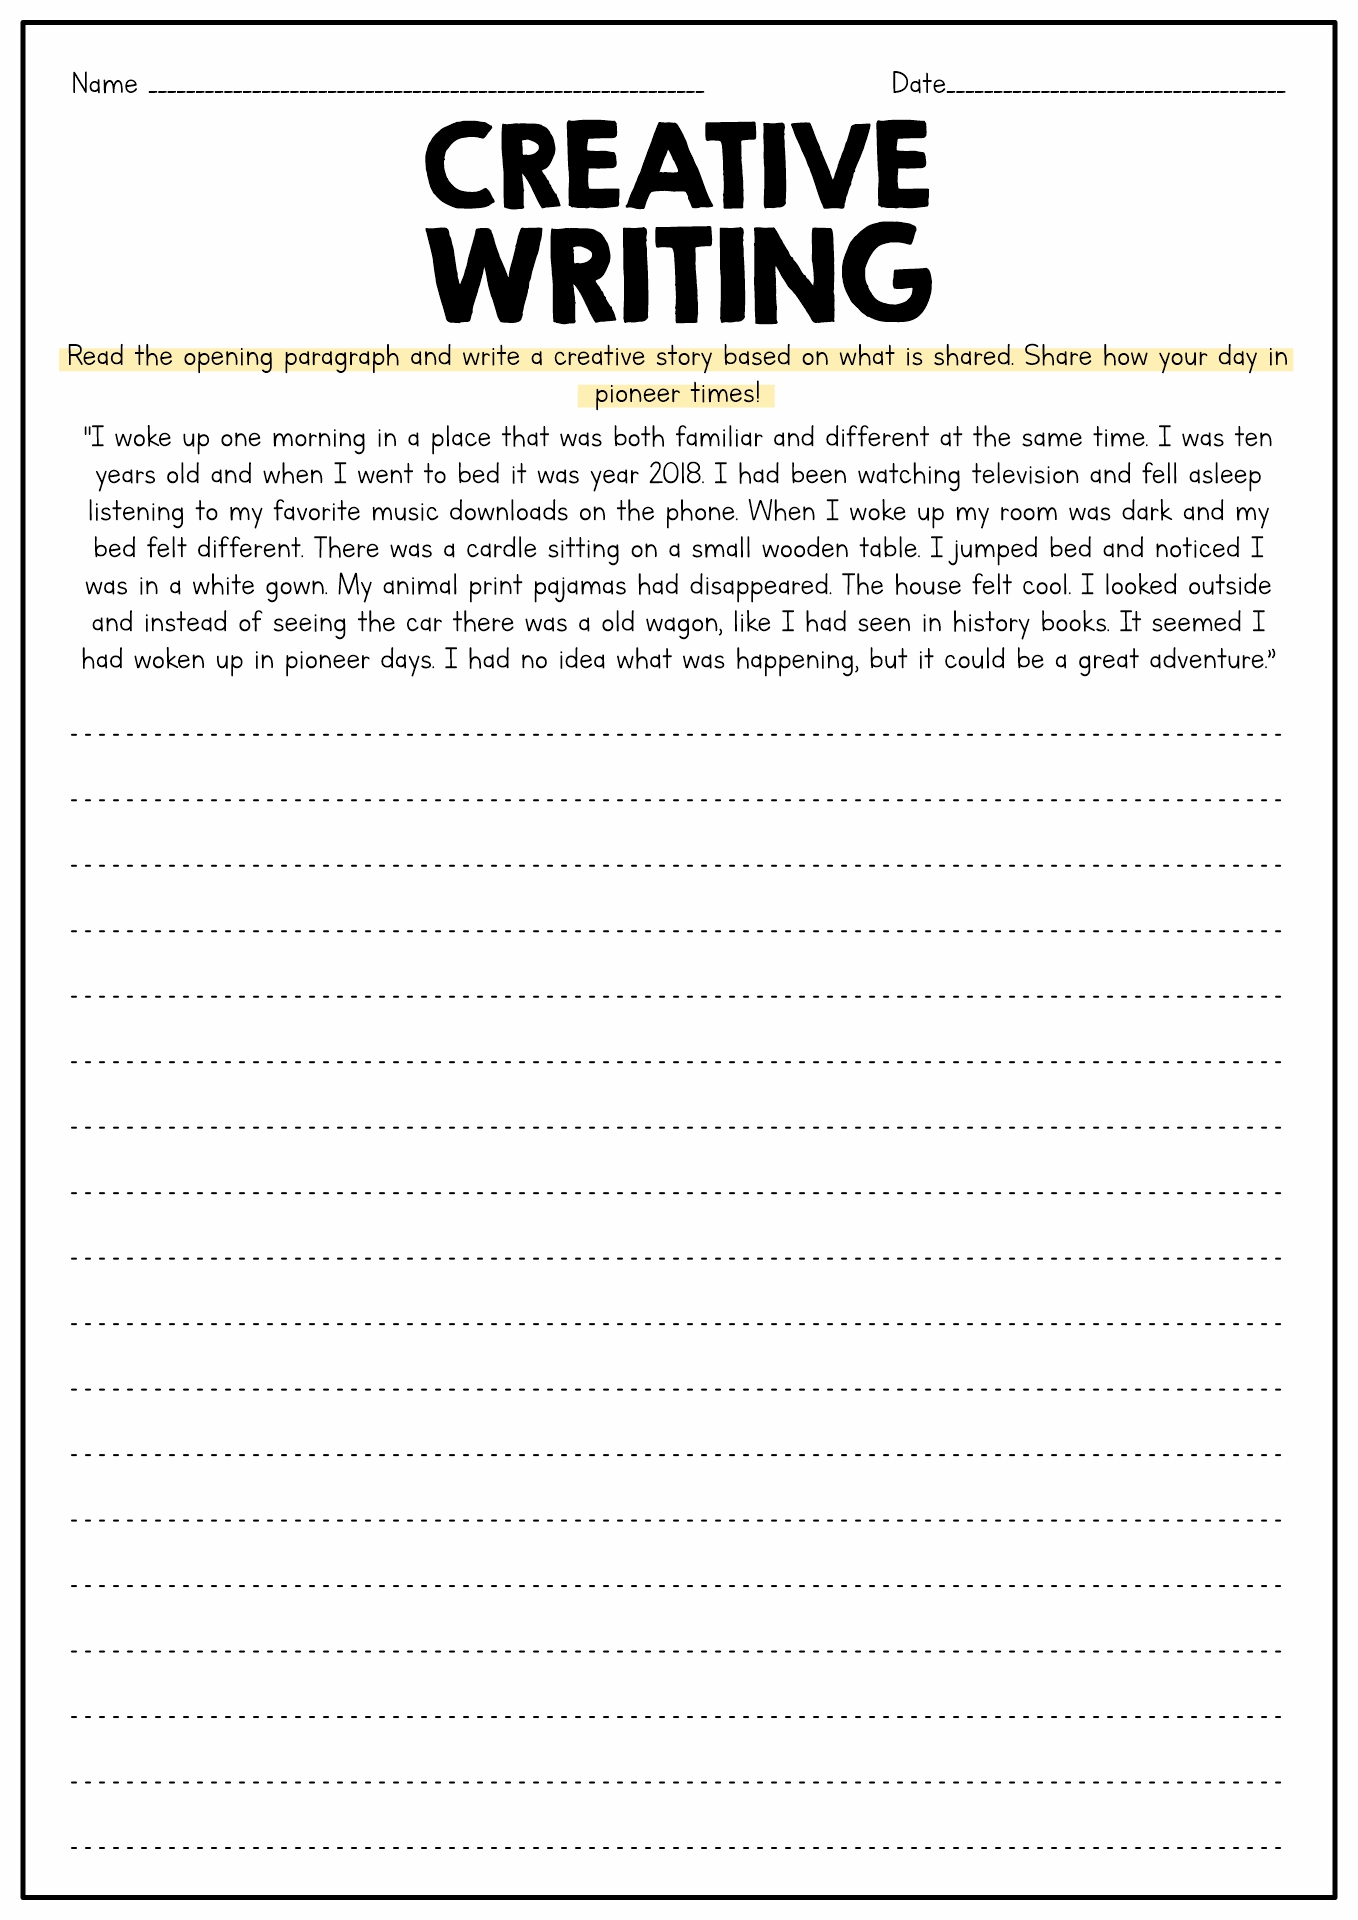 Narrative Writing Grade 4 Worksheets Image